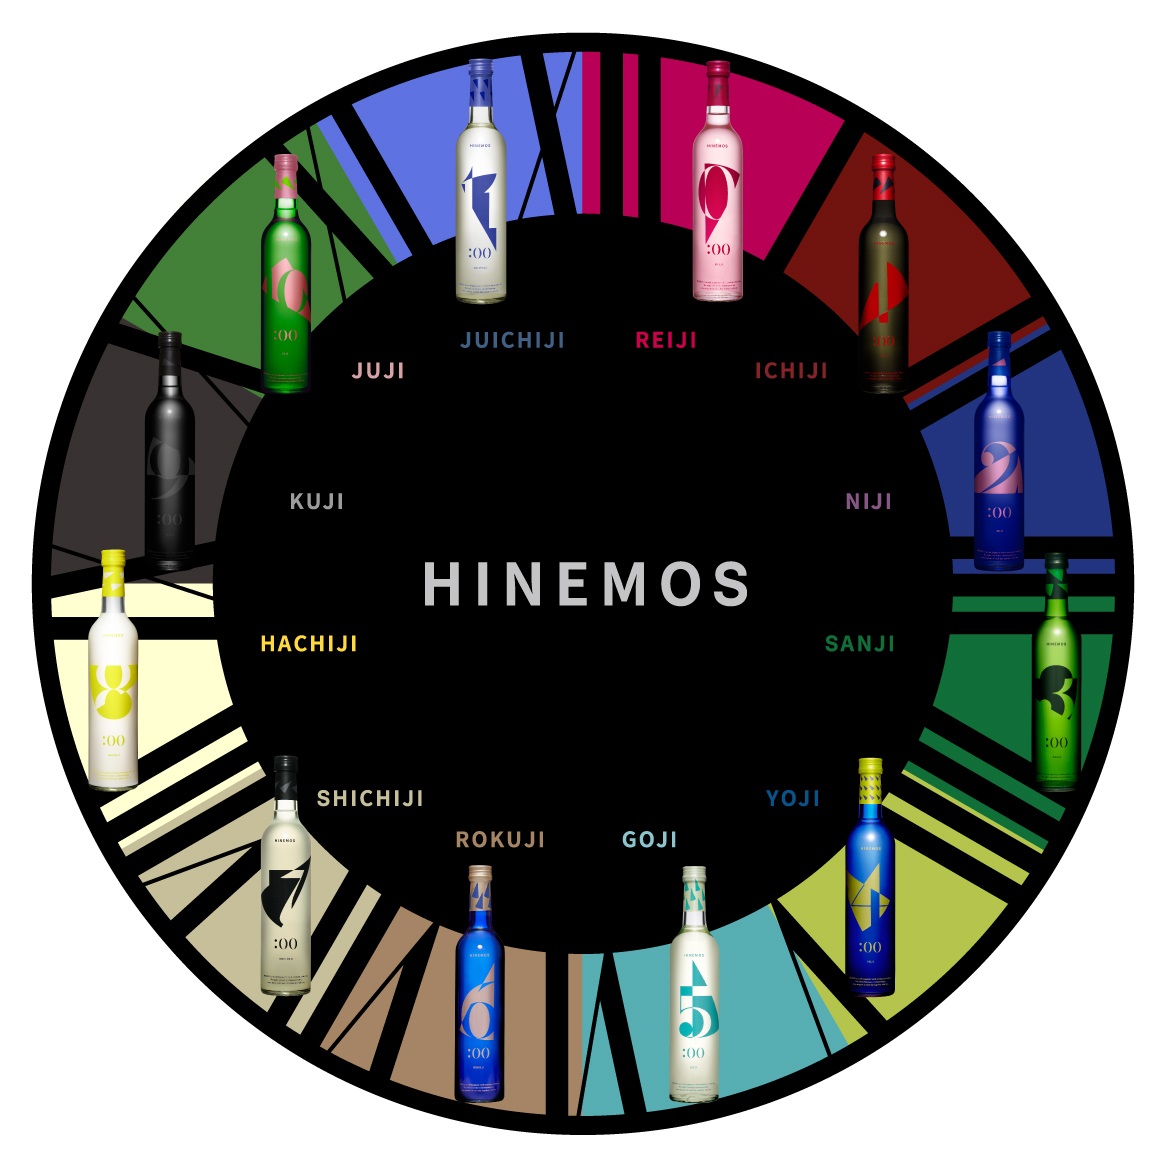 HINEMOSは「終日（ひねもす）=全ての時間」を意味するブランド